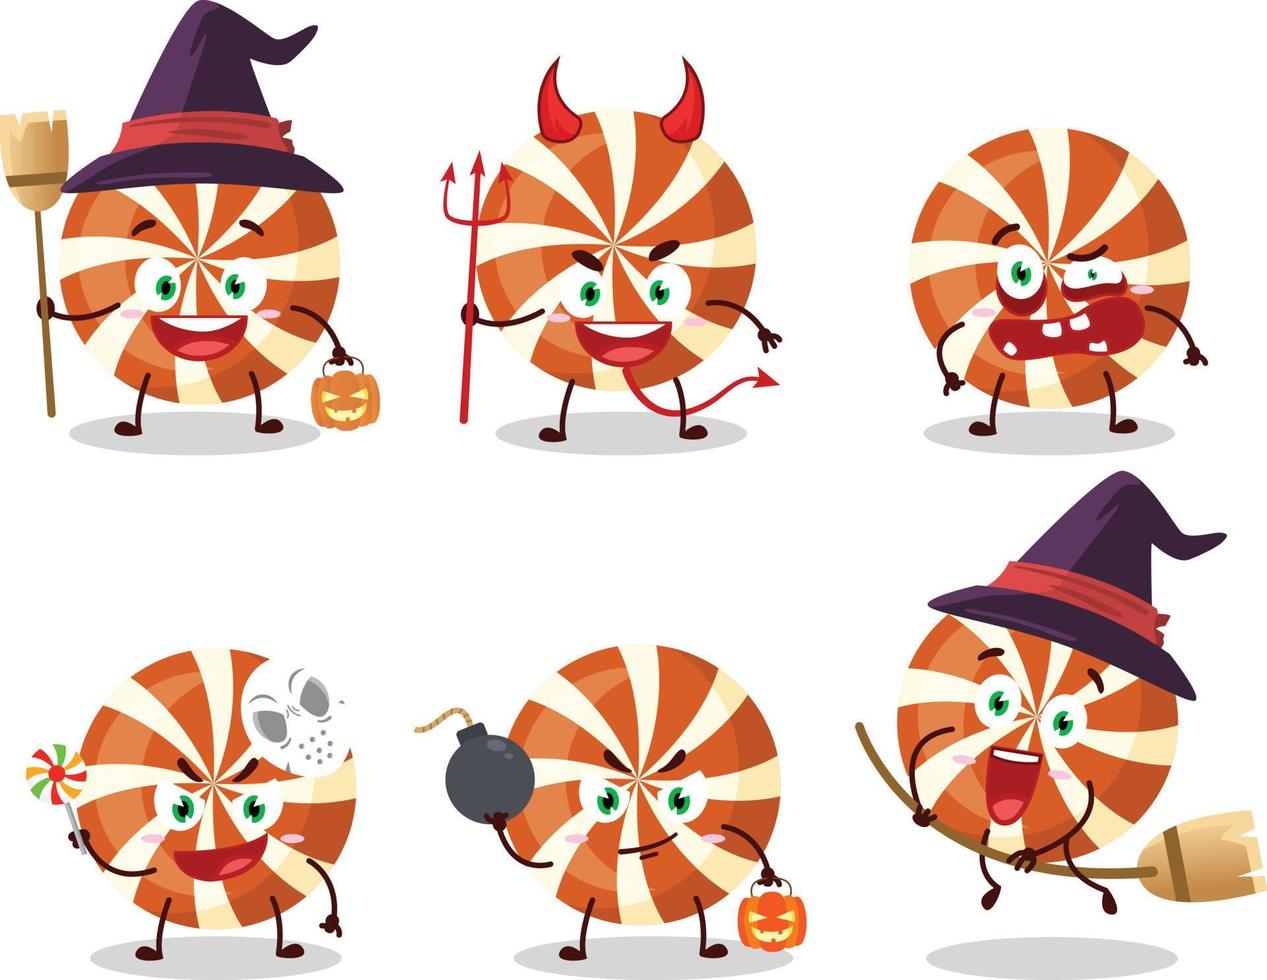 halloween uitdrukking emoticons met tekenfilm karakter van spiraal snoep vector